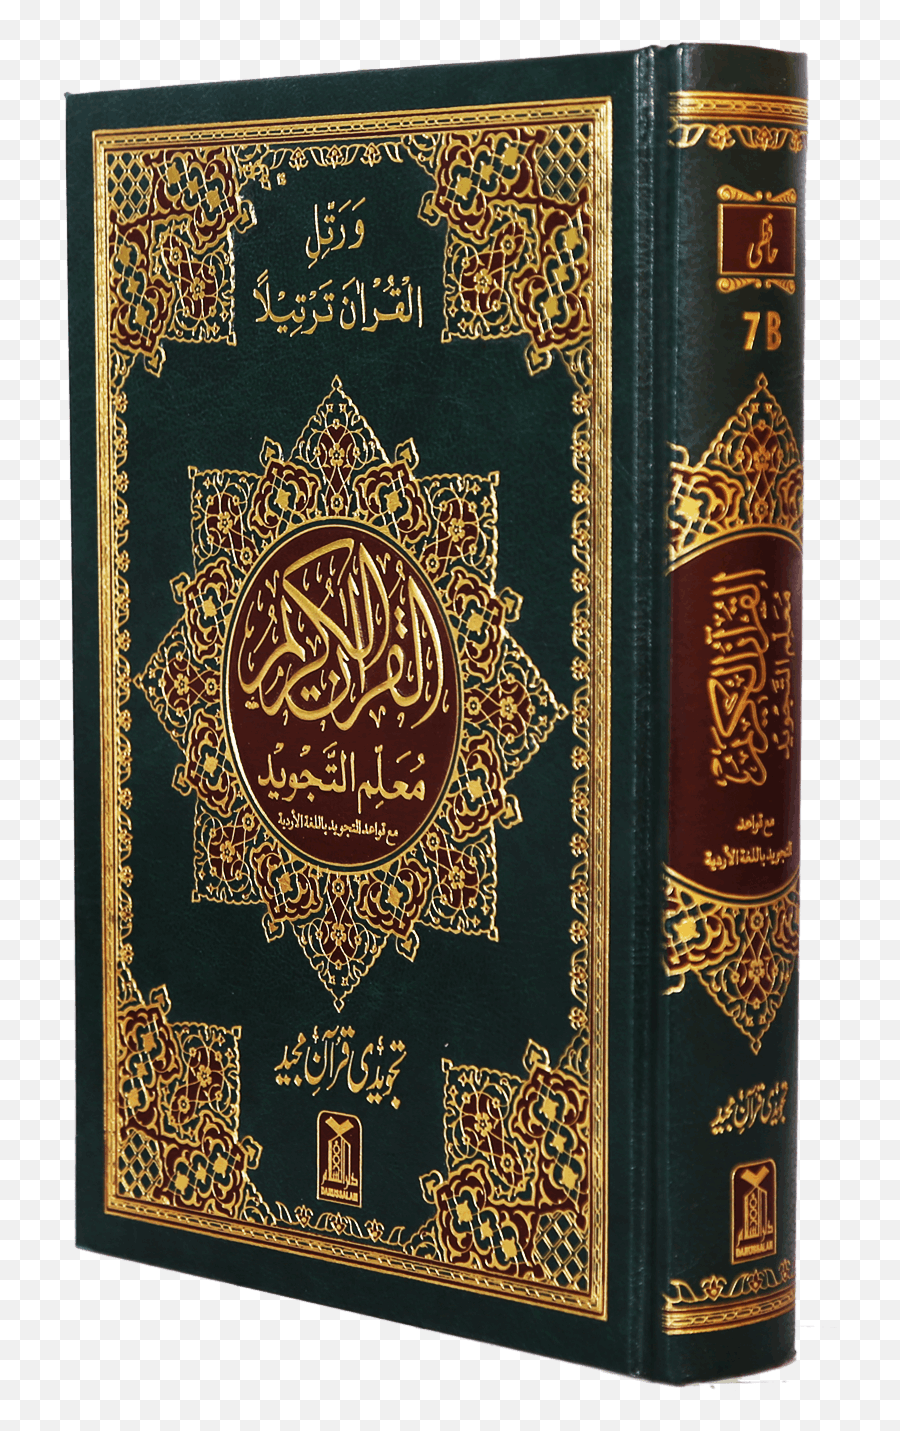 Al Quran Png Images Logo - Quran Books,Quran Png